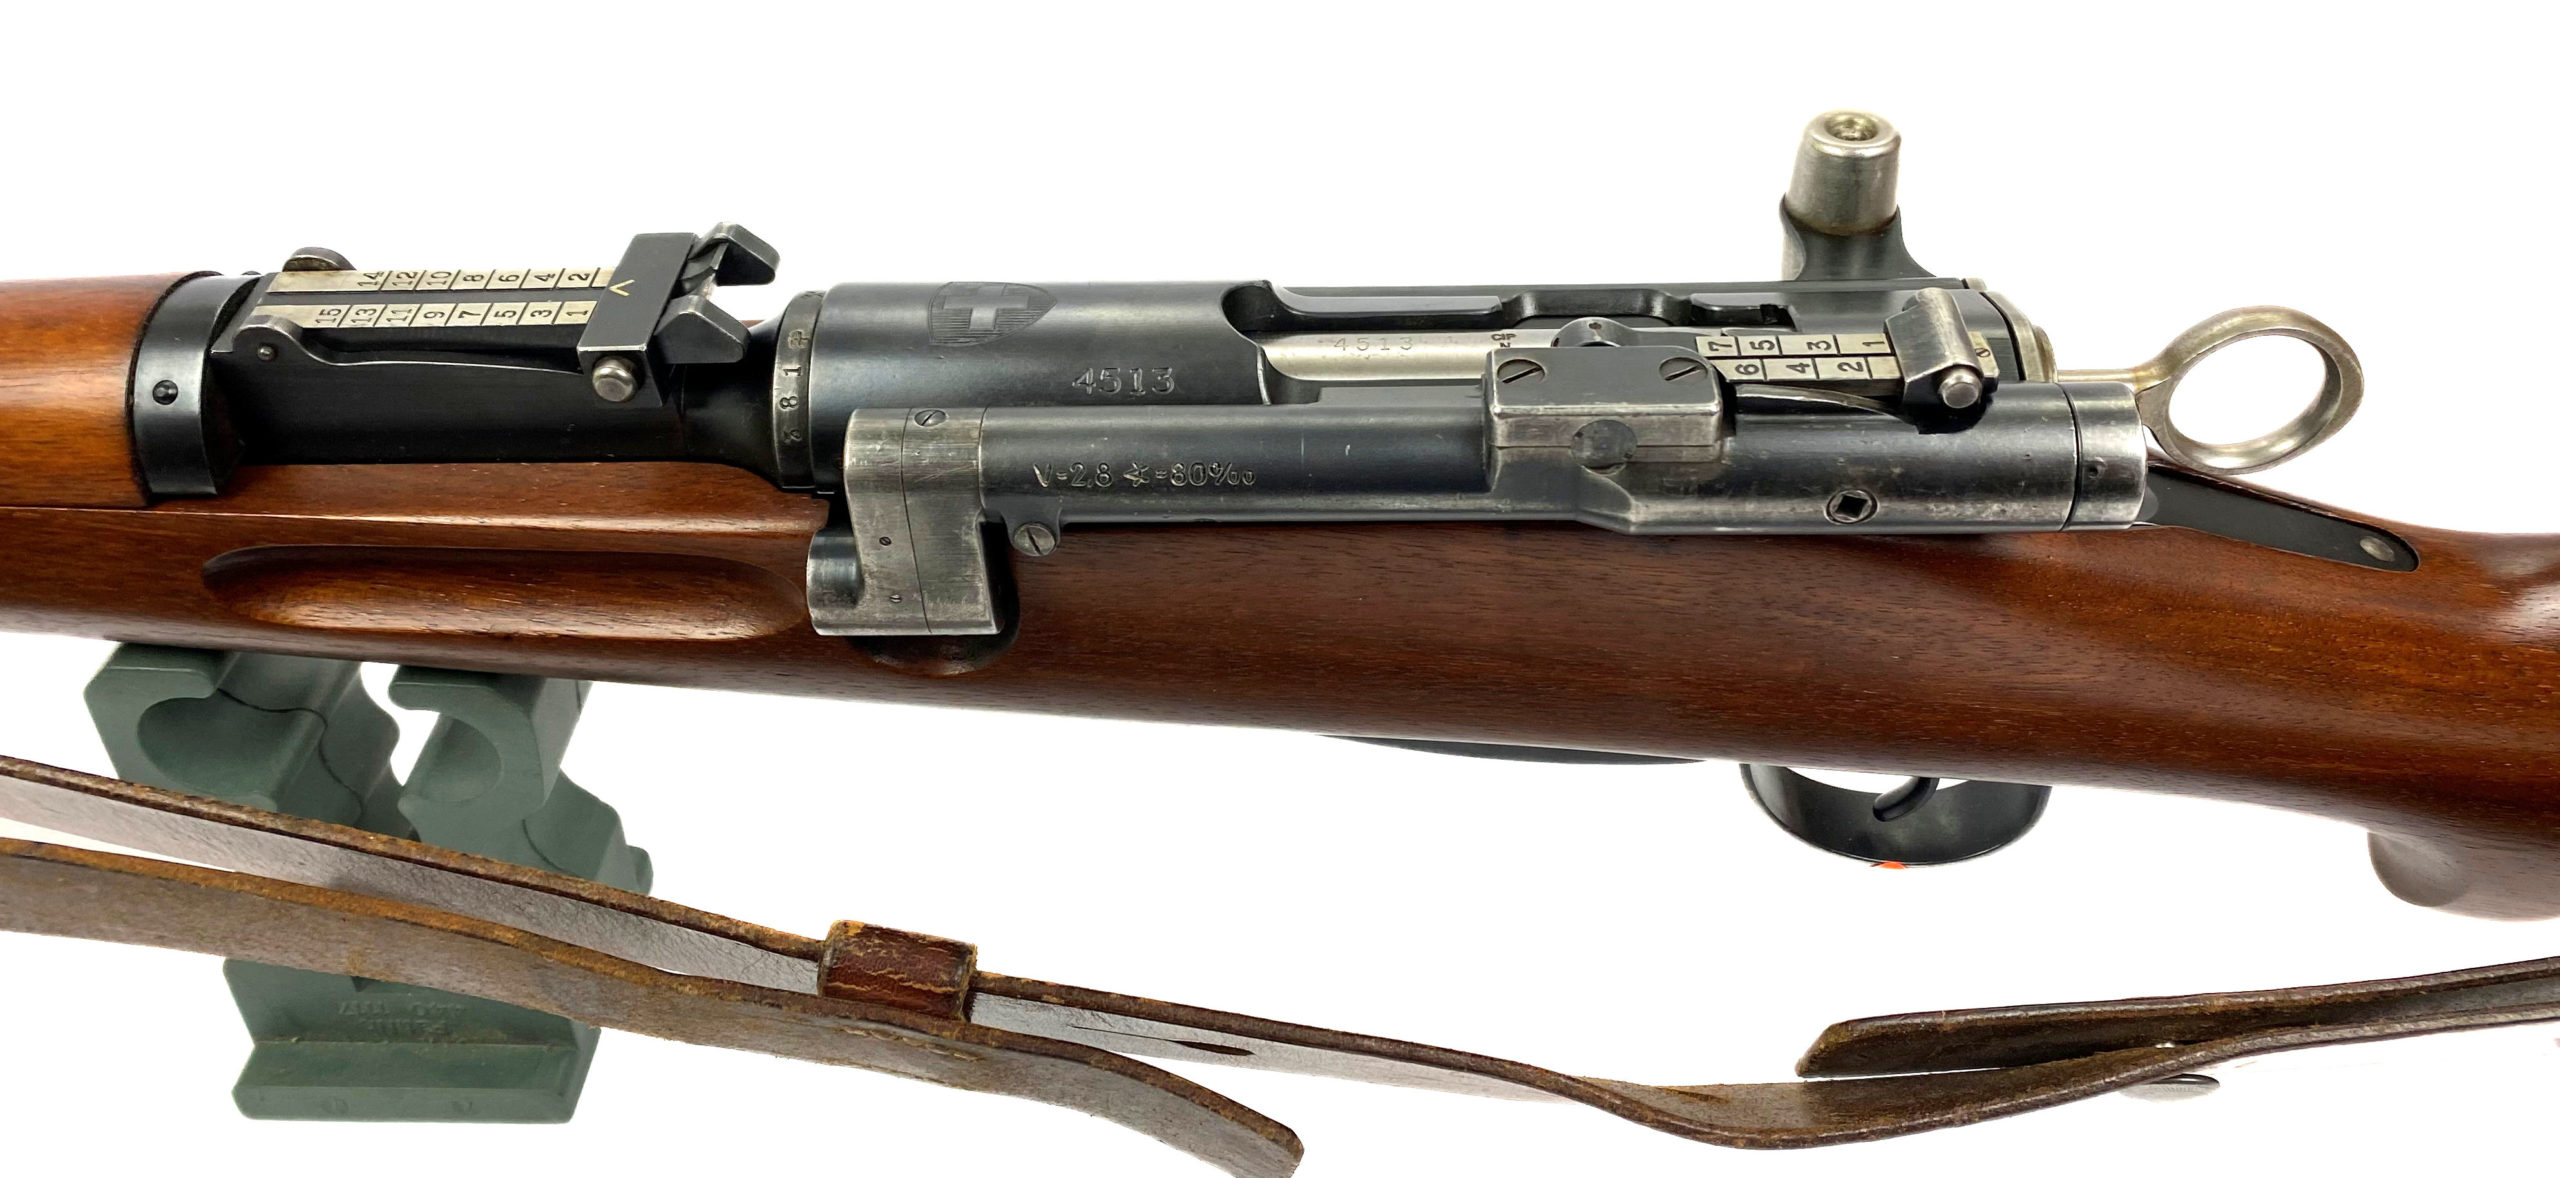 ZFK31-43 calibre 7.5x55 Zielfernrohr Karabiner